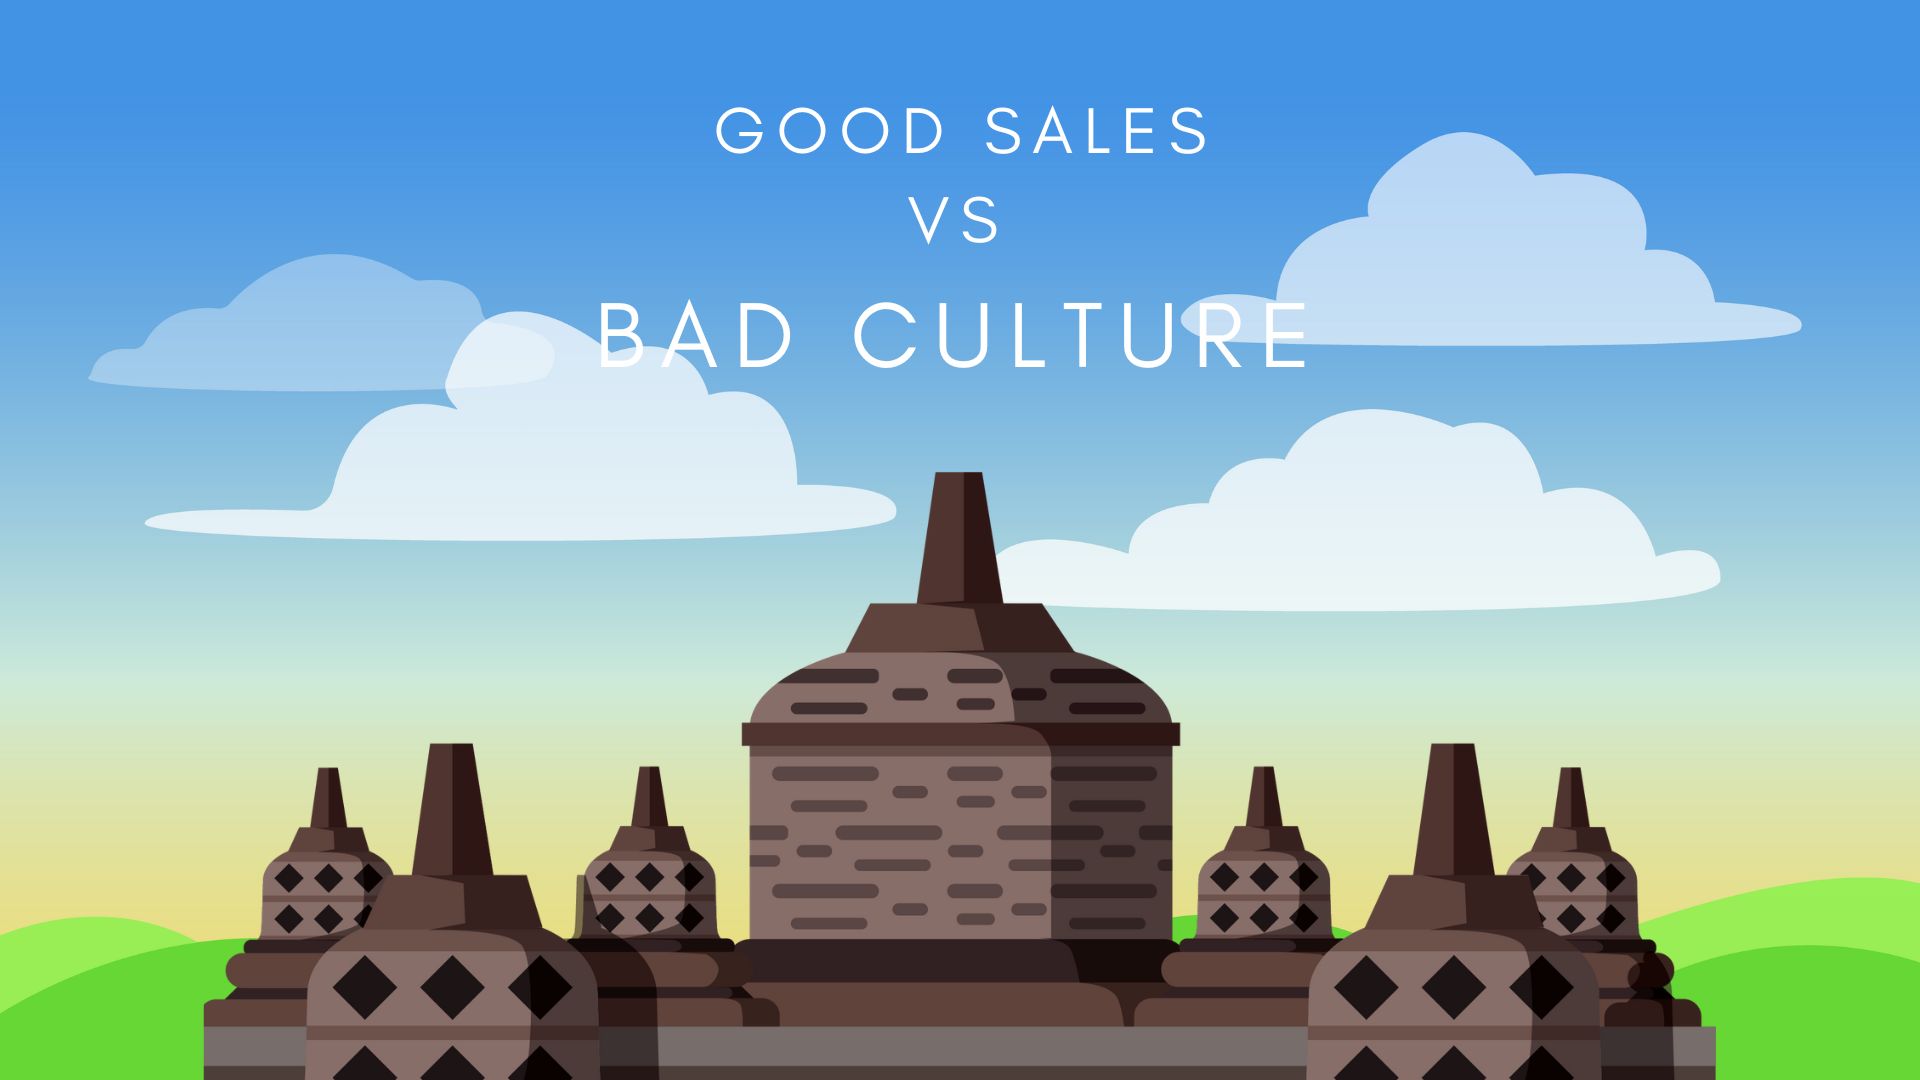 Good sales vs bad culture